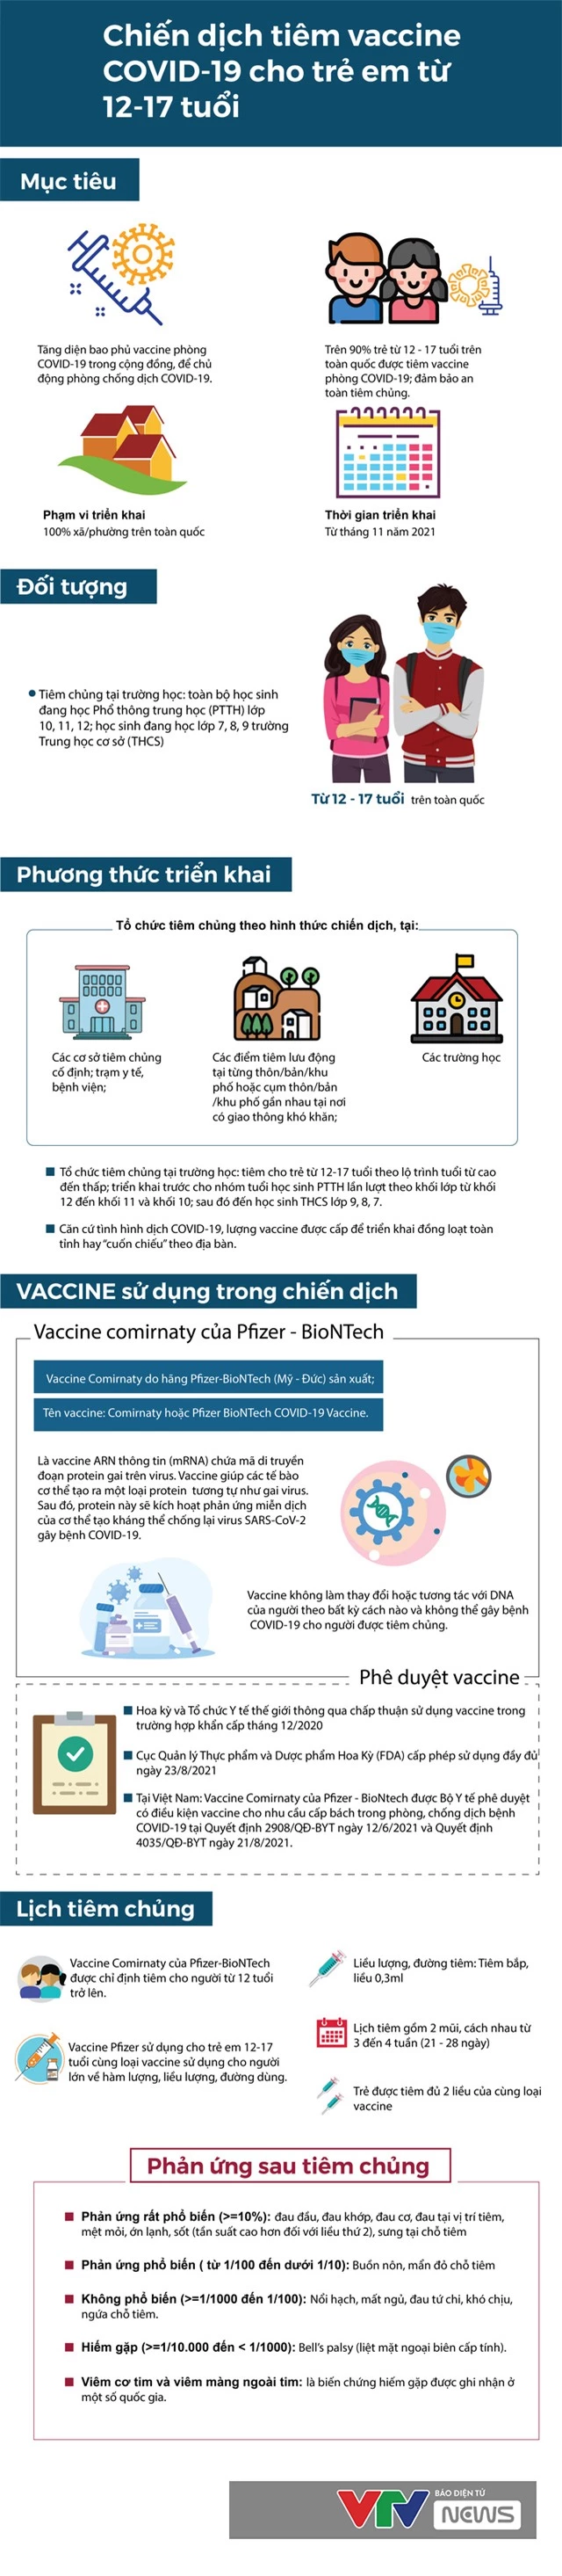 [Infographic] Thông tin cần biết về chiến dịch tiêm vaccine COVID-19 cho trẻ từ 12-17 tuổi - Ảnh 1.